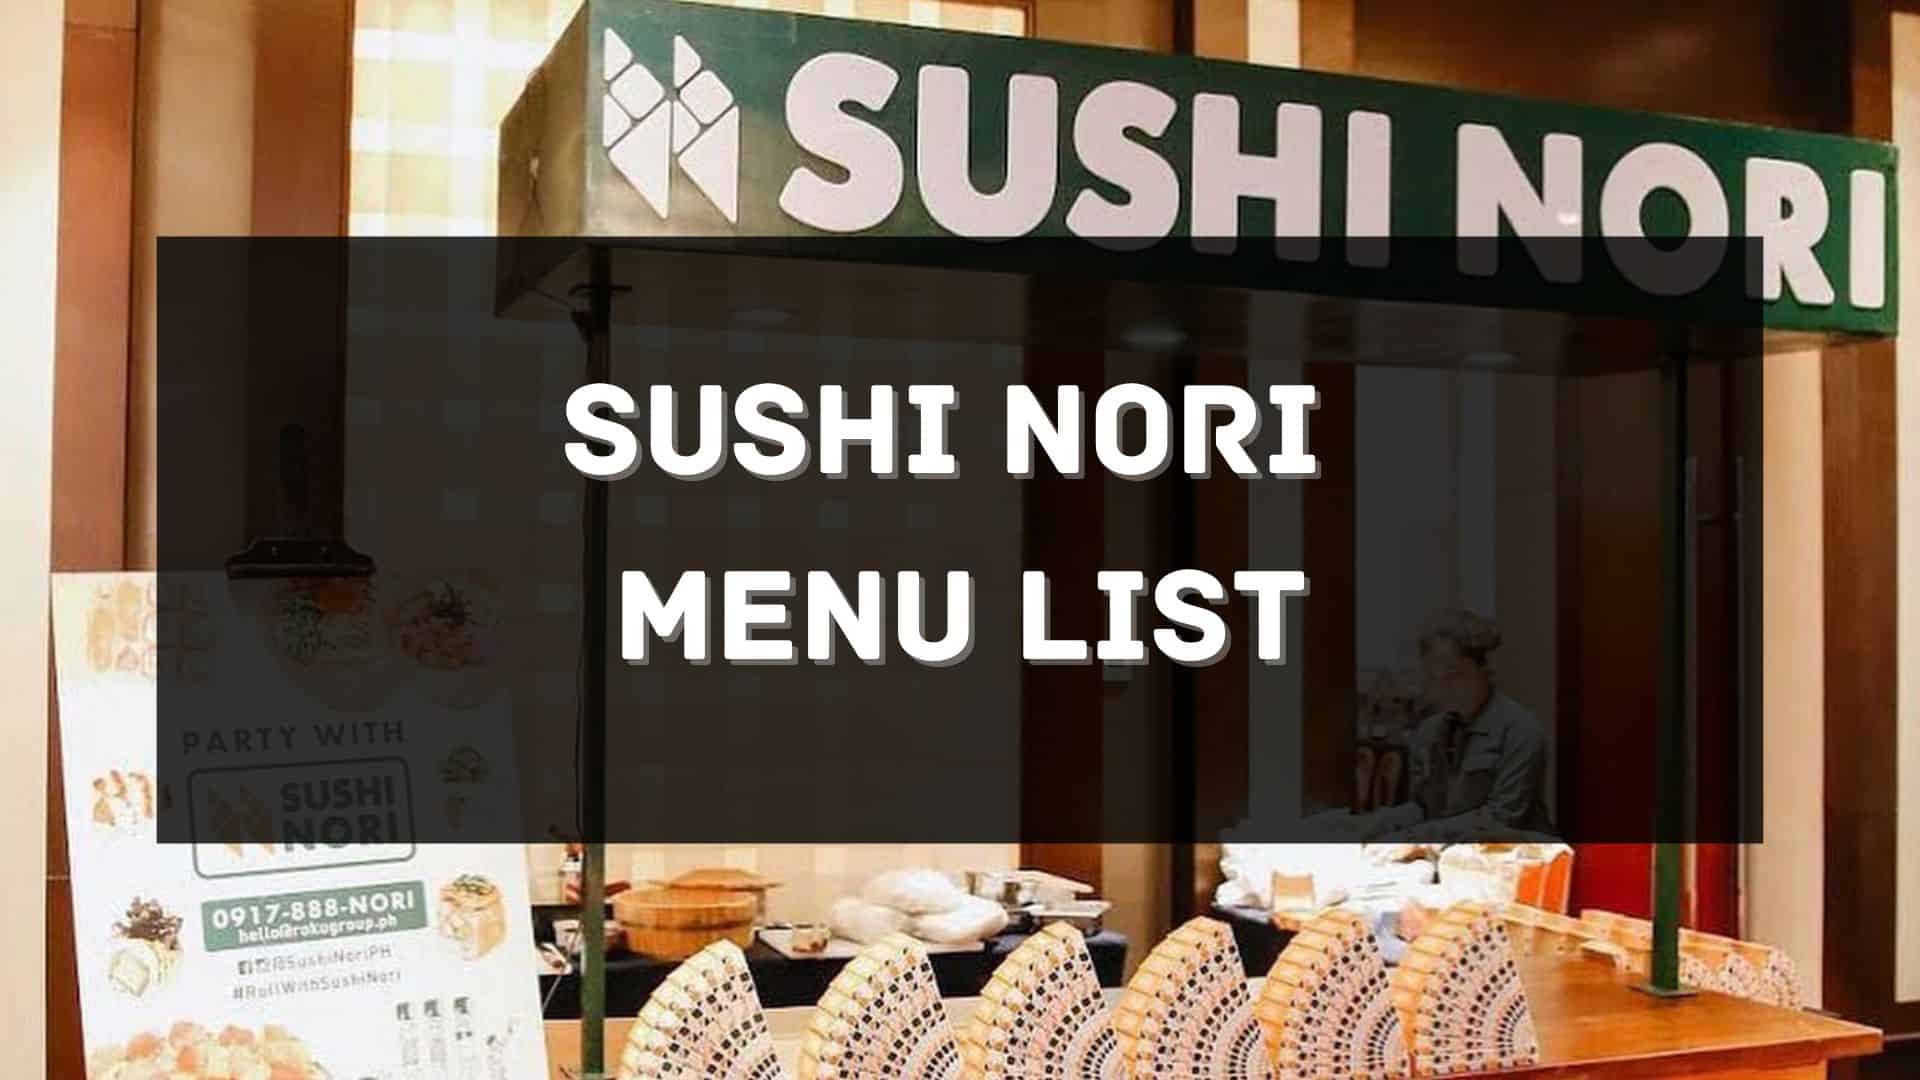 sushi nori menu prices philippines